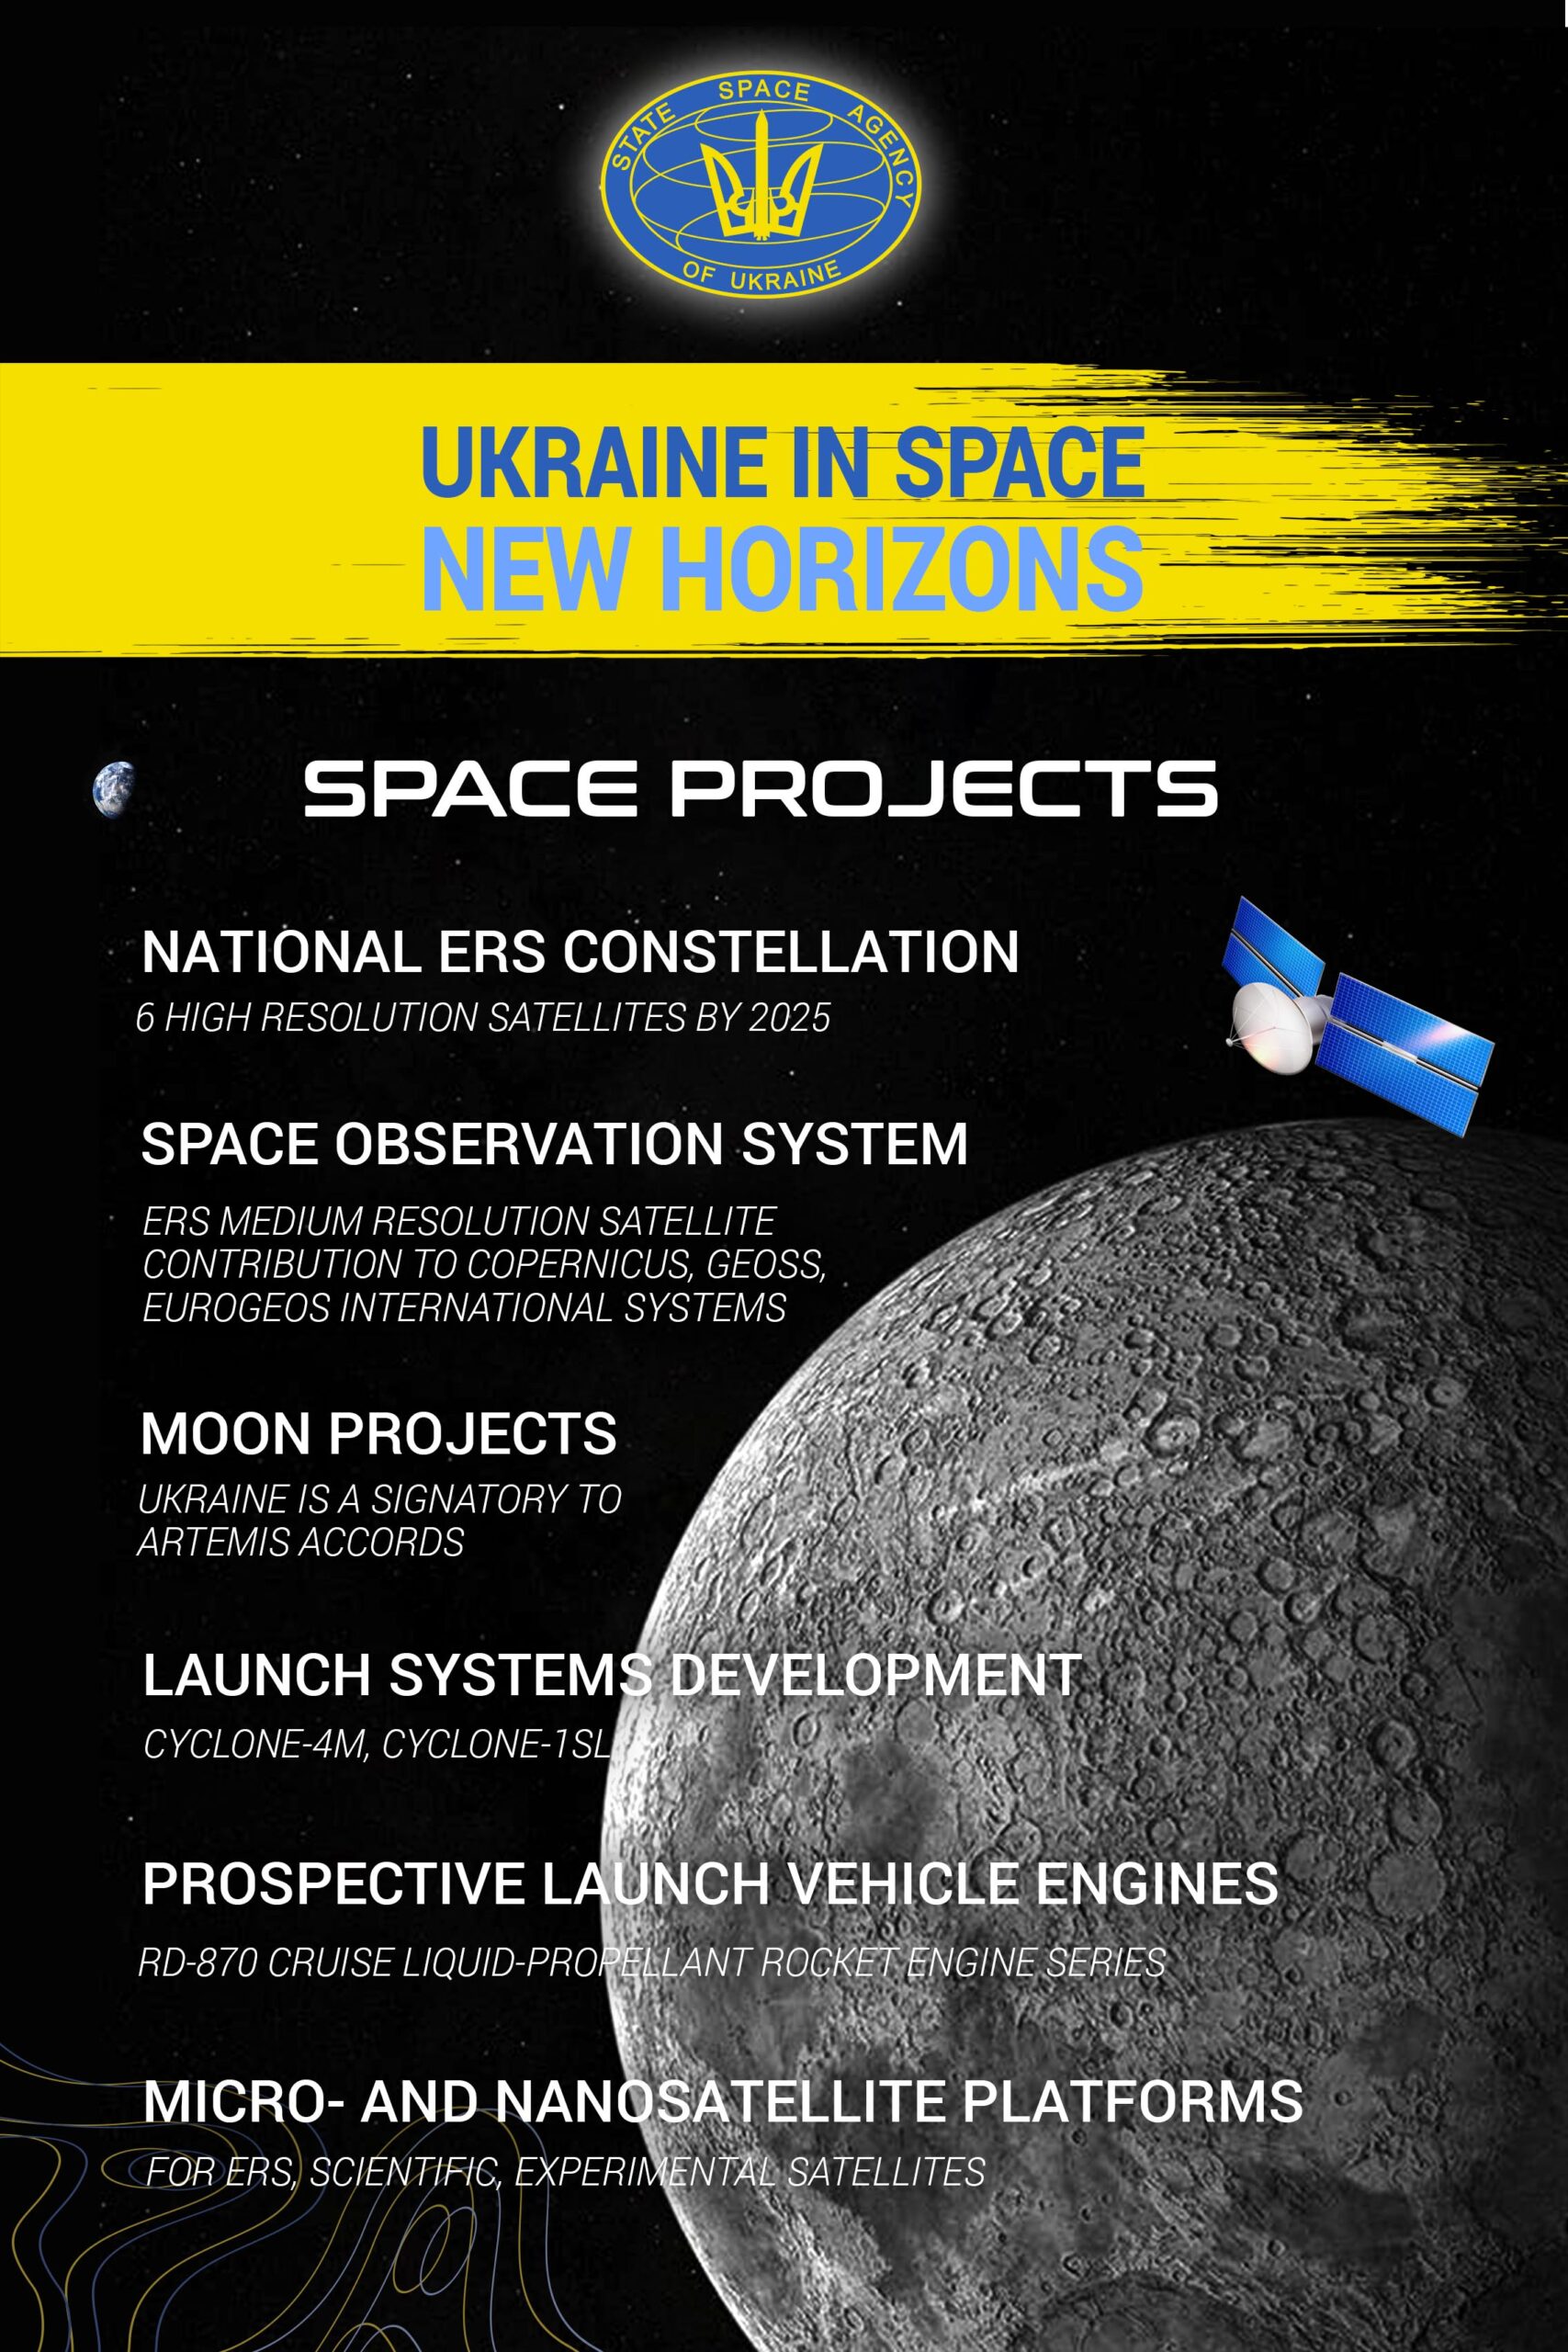 Ukrainian Space Sector